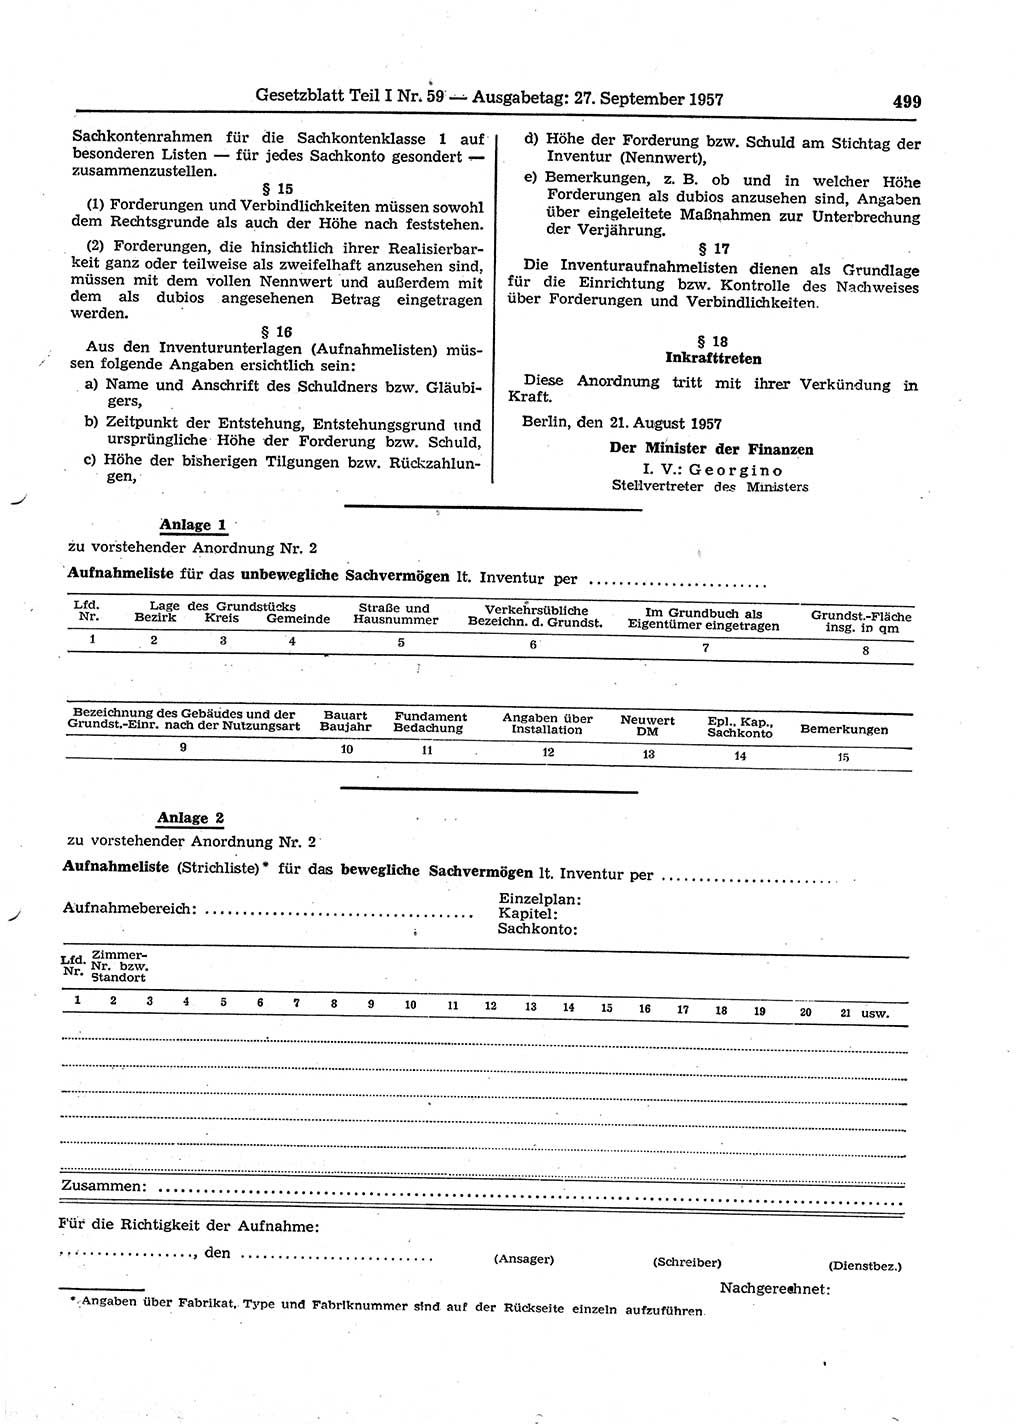 Gesetzblatt (GBl.) der Deutschen Demokratischen Republik (DDR) Teil Ⅰ 1957, Seite 499 (GBl. DDR Ⅰ 1957, S. 499)